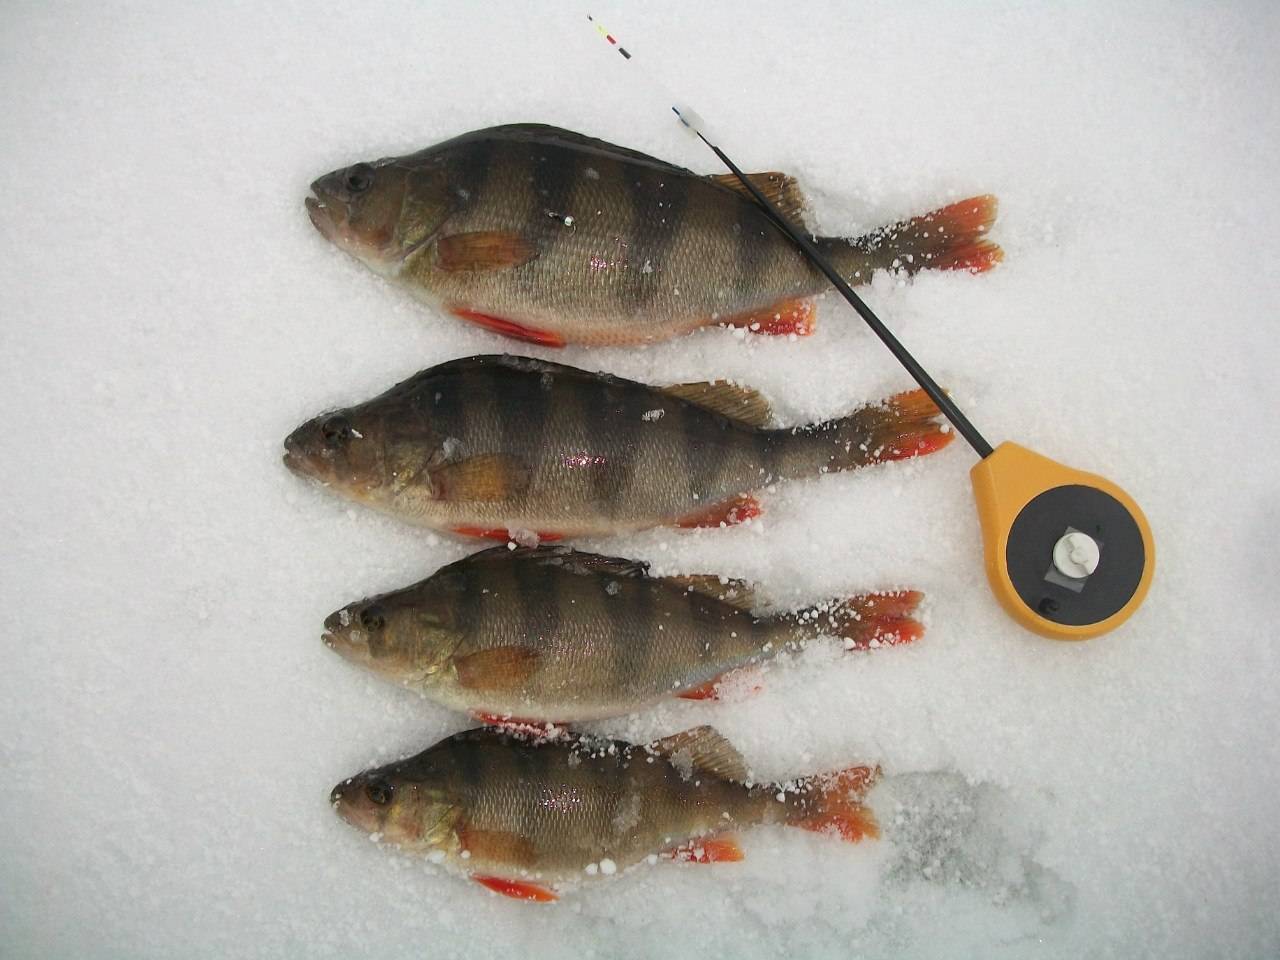 Зимняя рыбалка на окуня: какие снасти применять и на что ловить
зимняя рыбалка на окуня: какие снасти применять и на что ловить